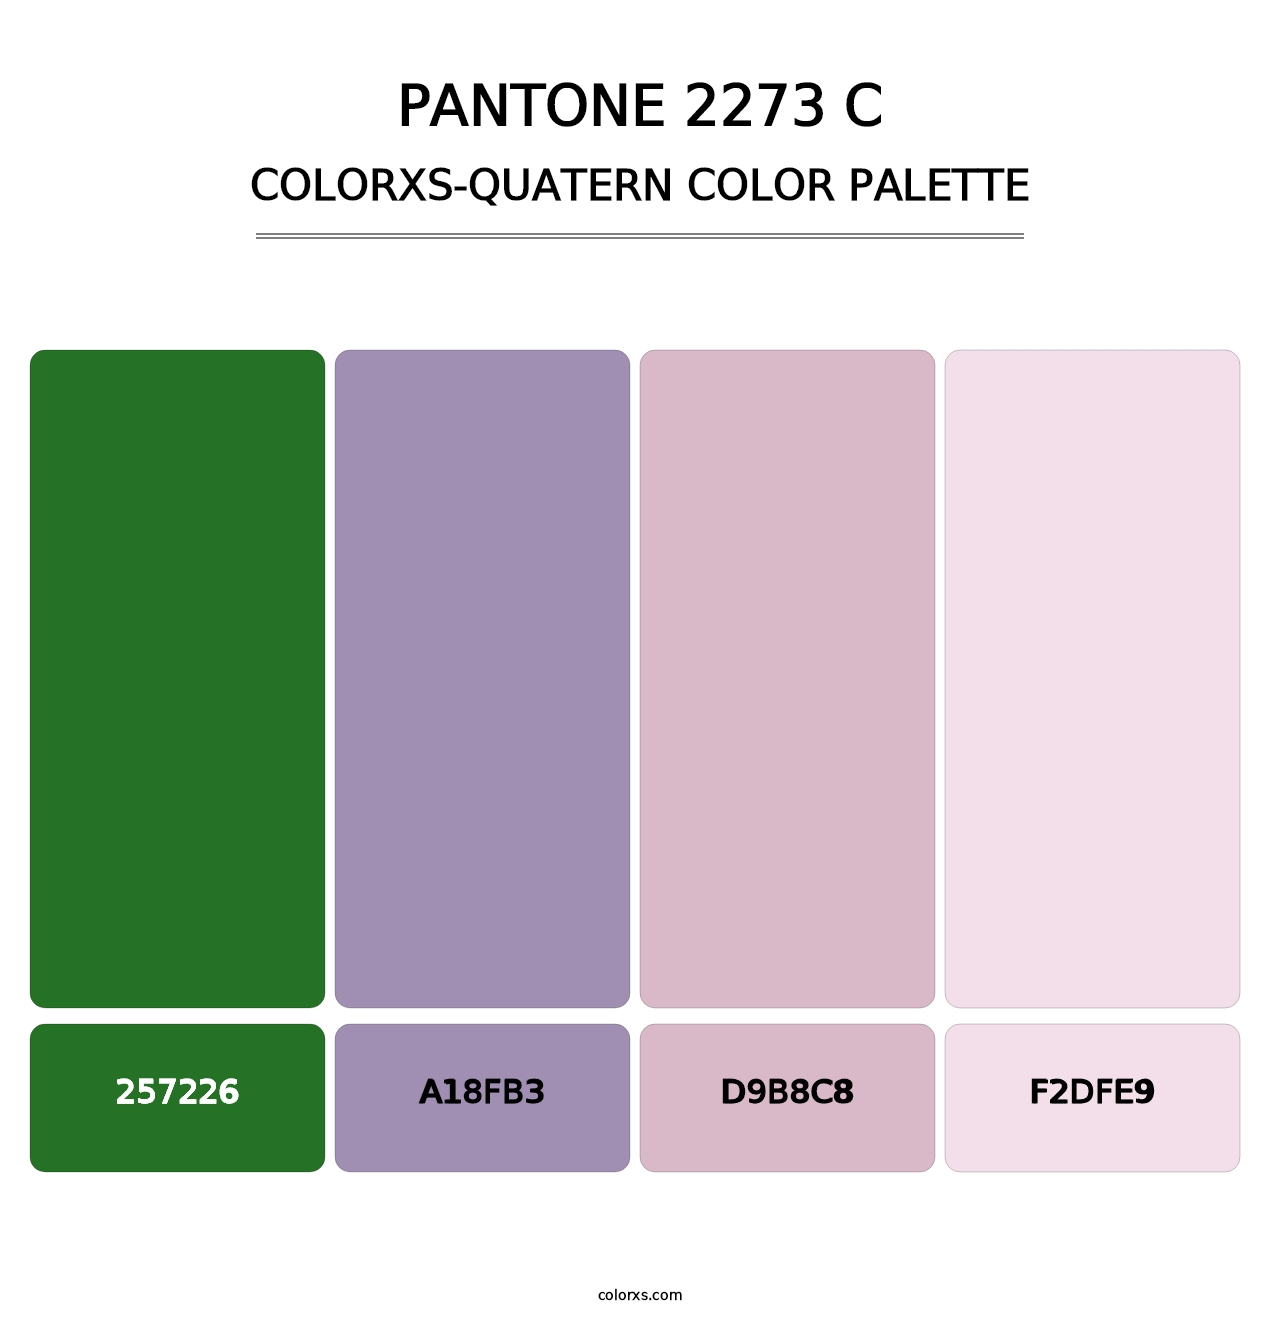 PANTONE 2273 C - Colorxs Quatern Palette